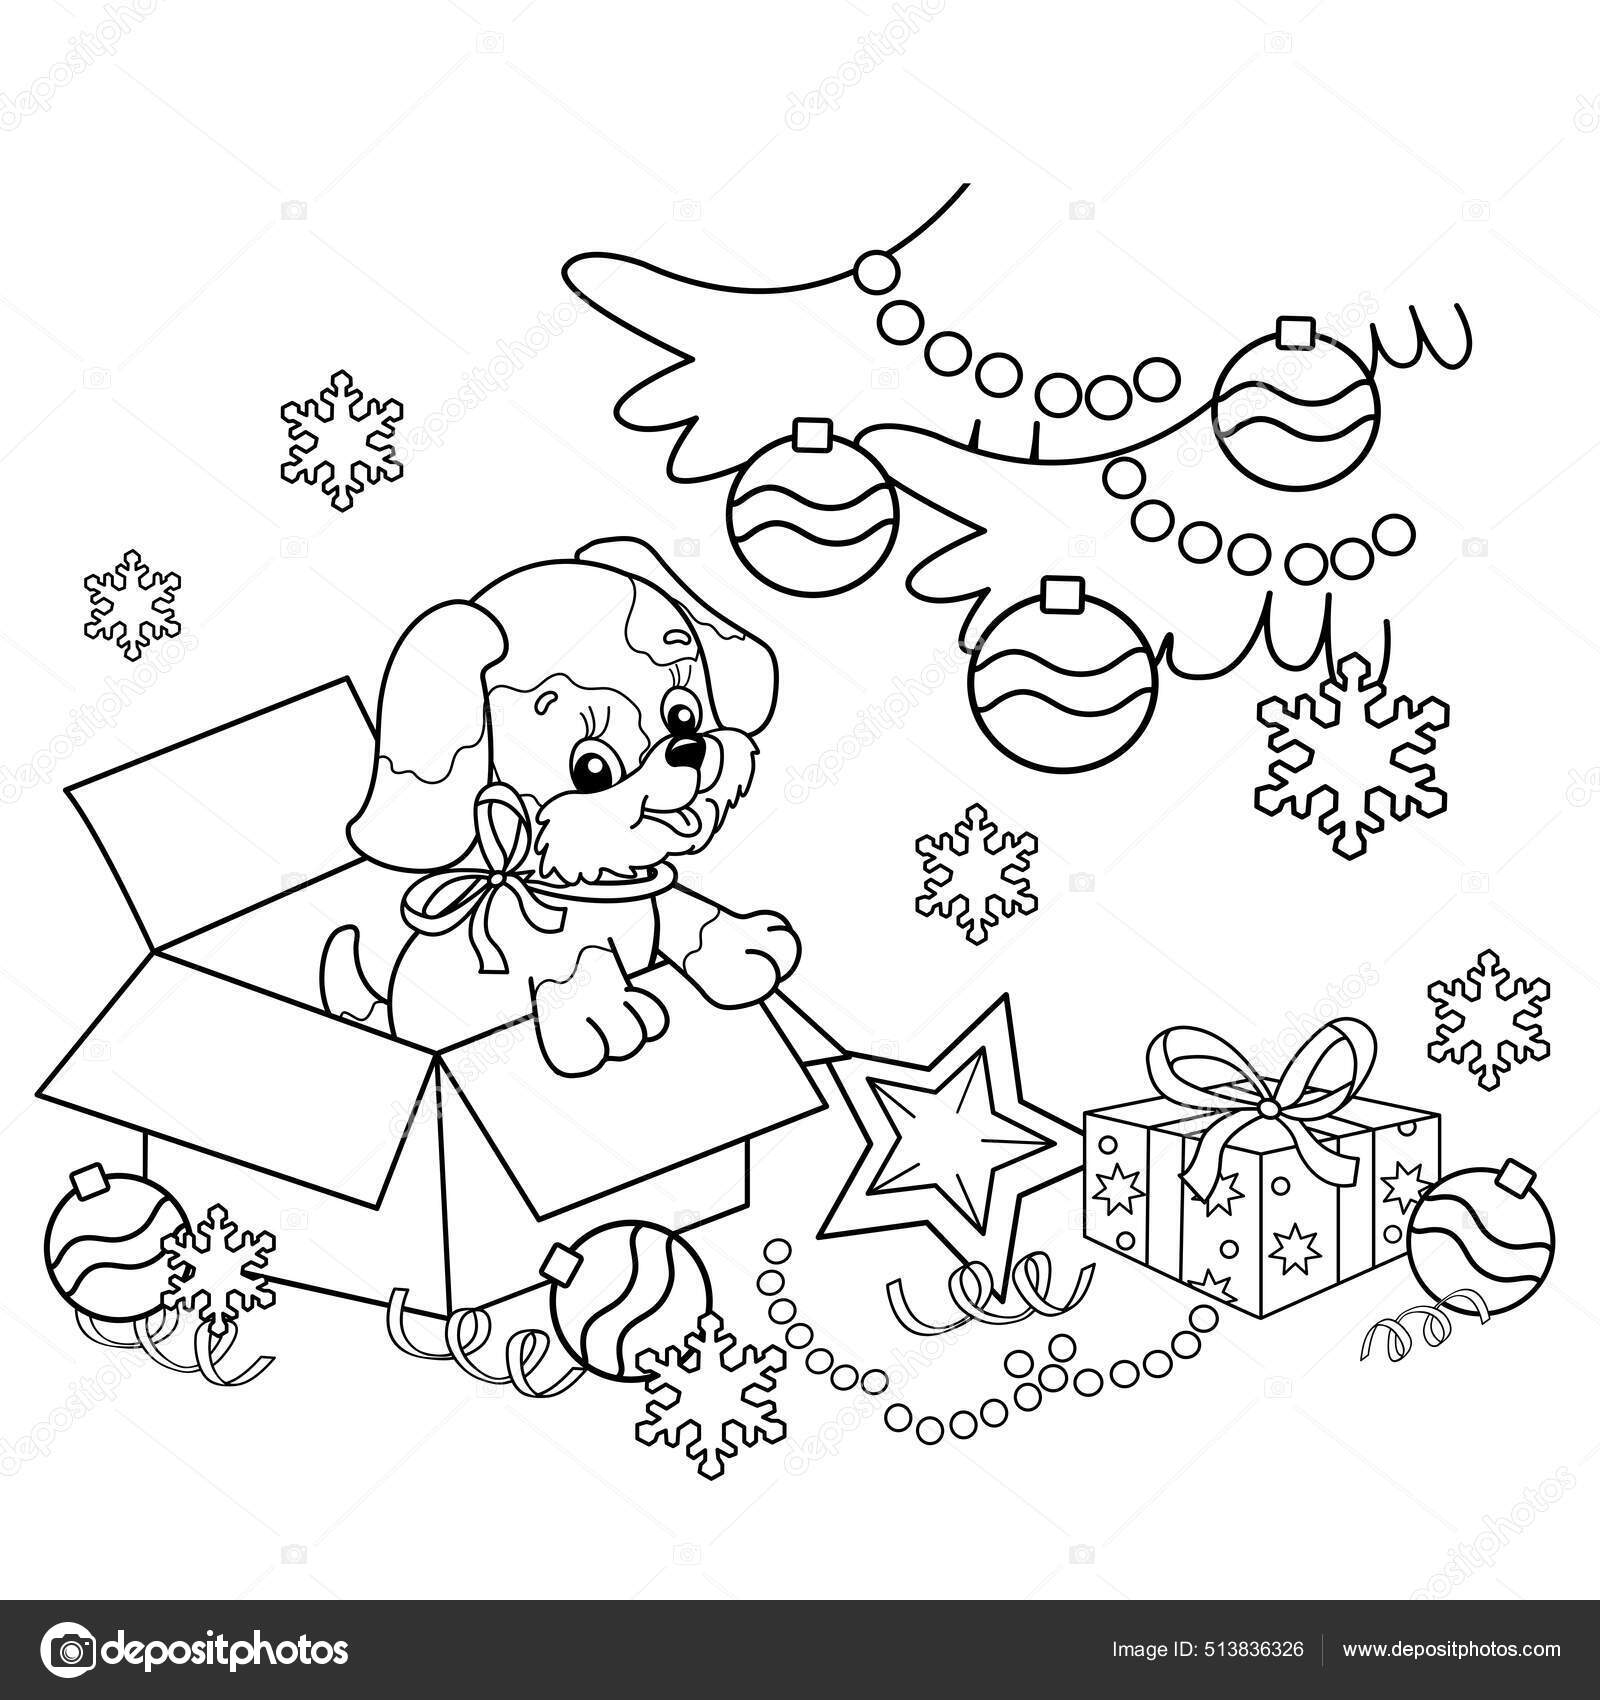 How to draw Kawaii Christmas GIFT l Como desenhar PRESENTE de